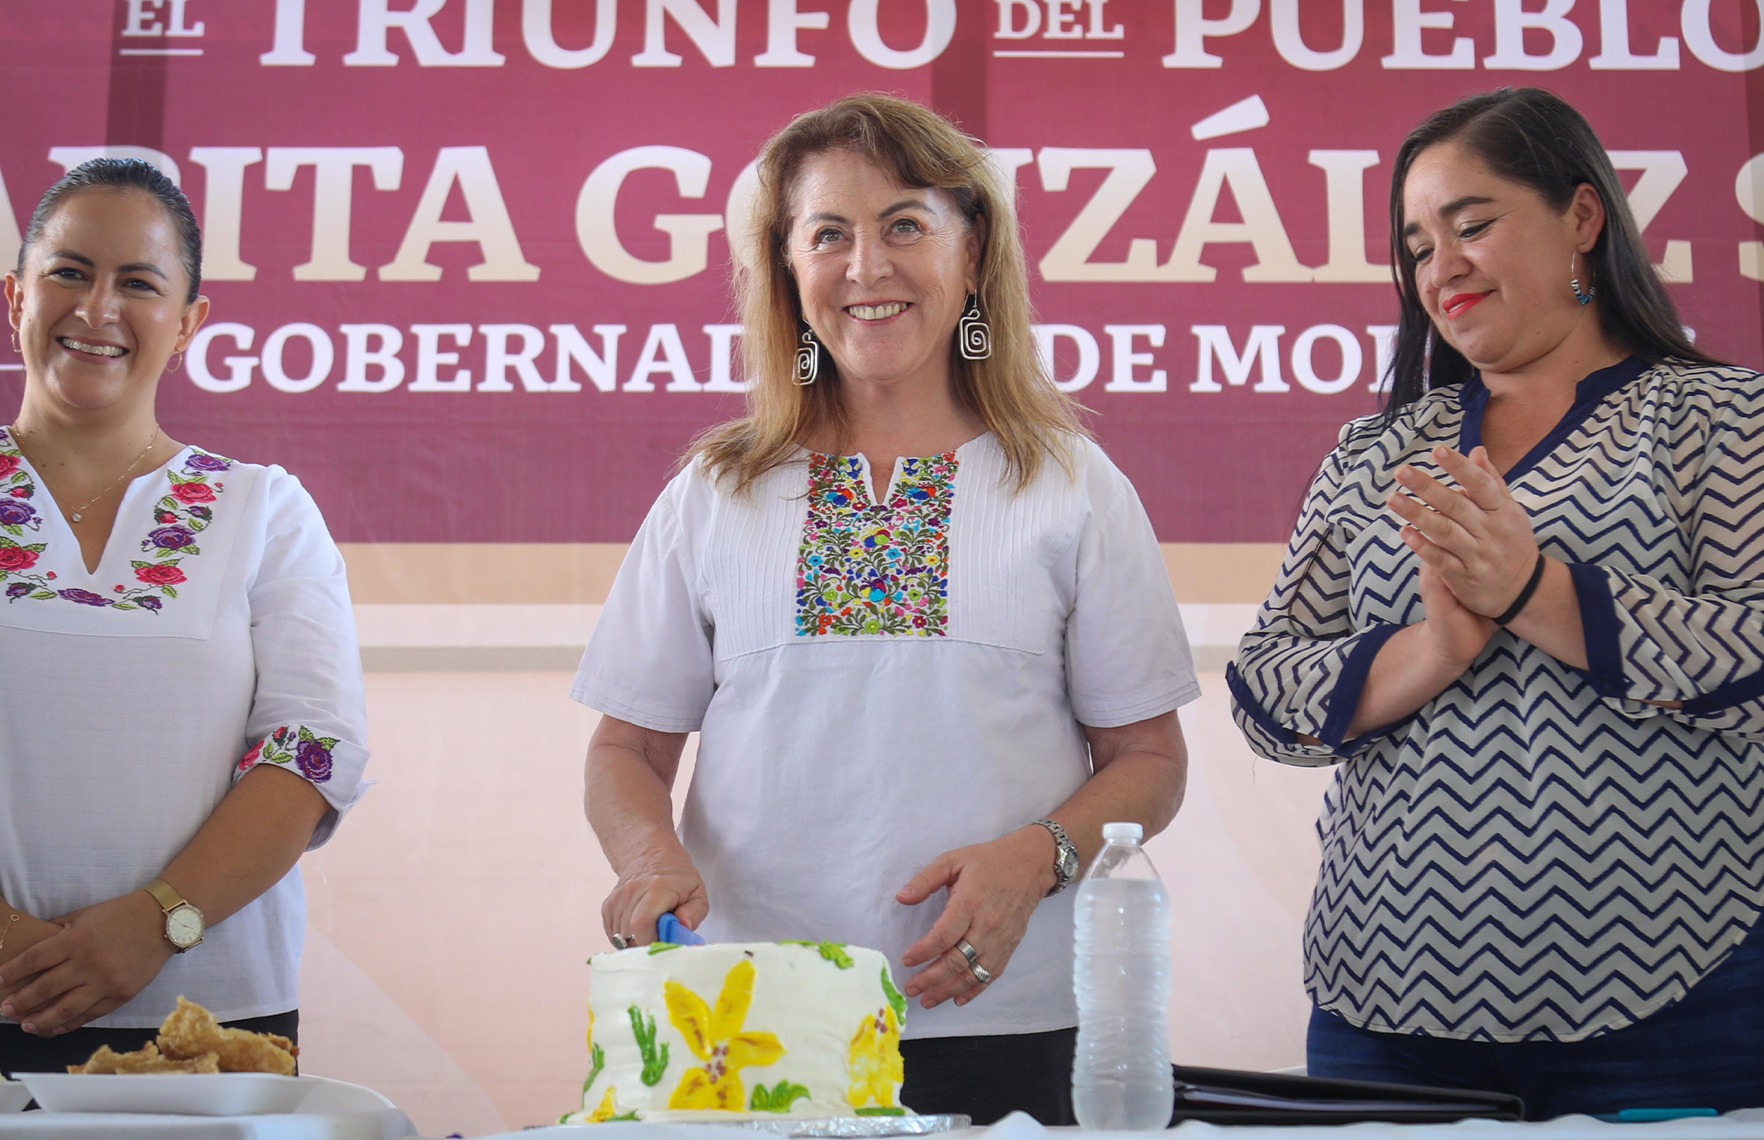 Margarita González Saravia visita comunidad de Huecahuaxco